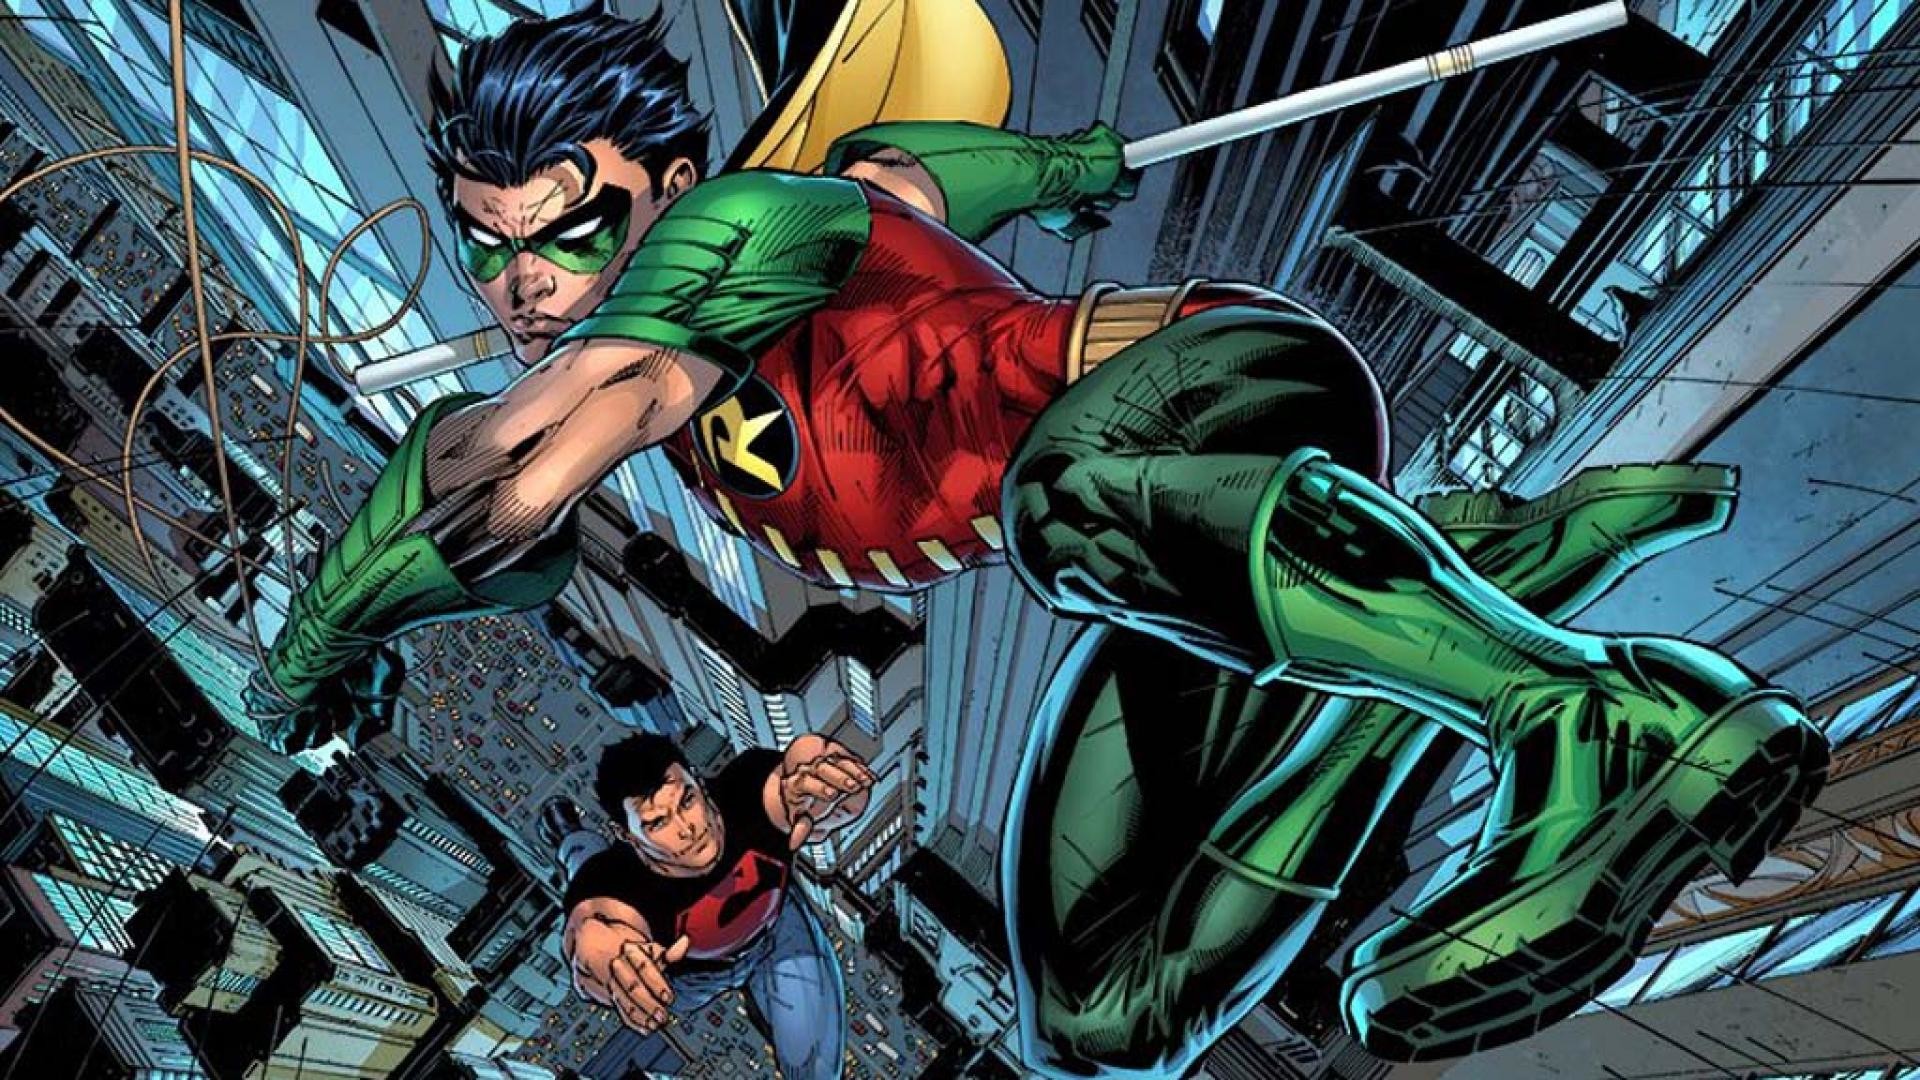 1920x1080 Dc comics robin superboy teen titans young justice wallpaper HQ .